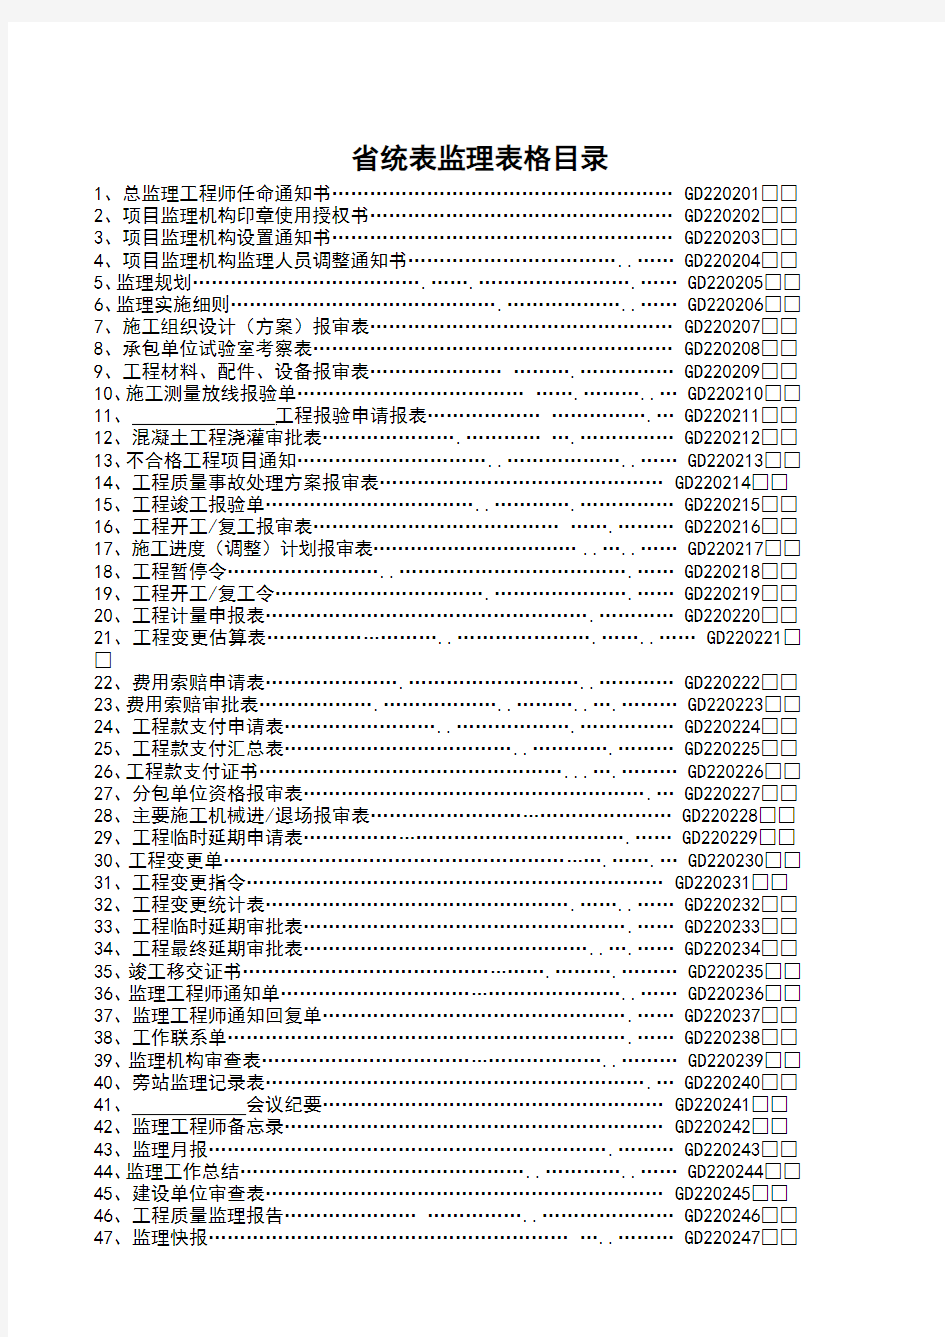 2015版201509广东省统表监理用表036